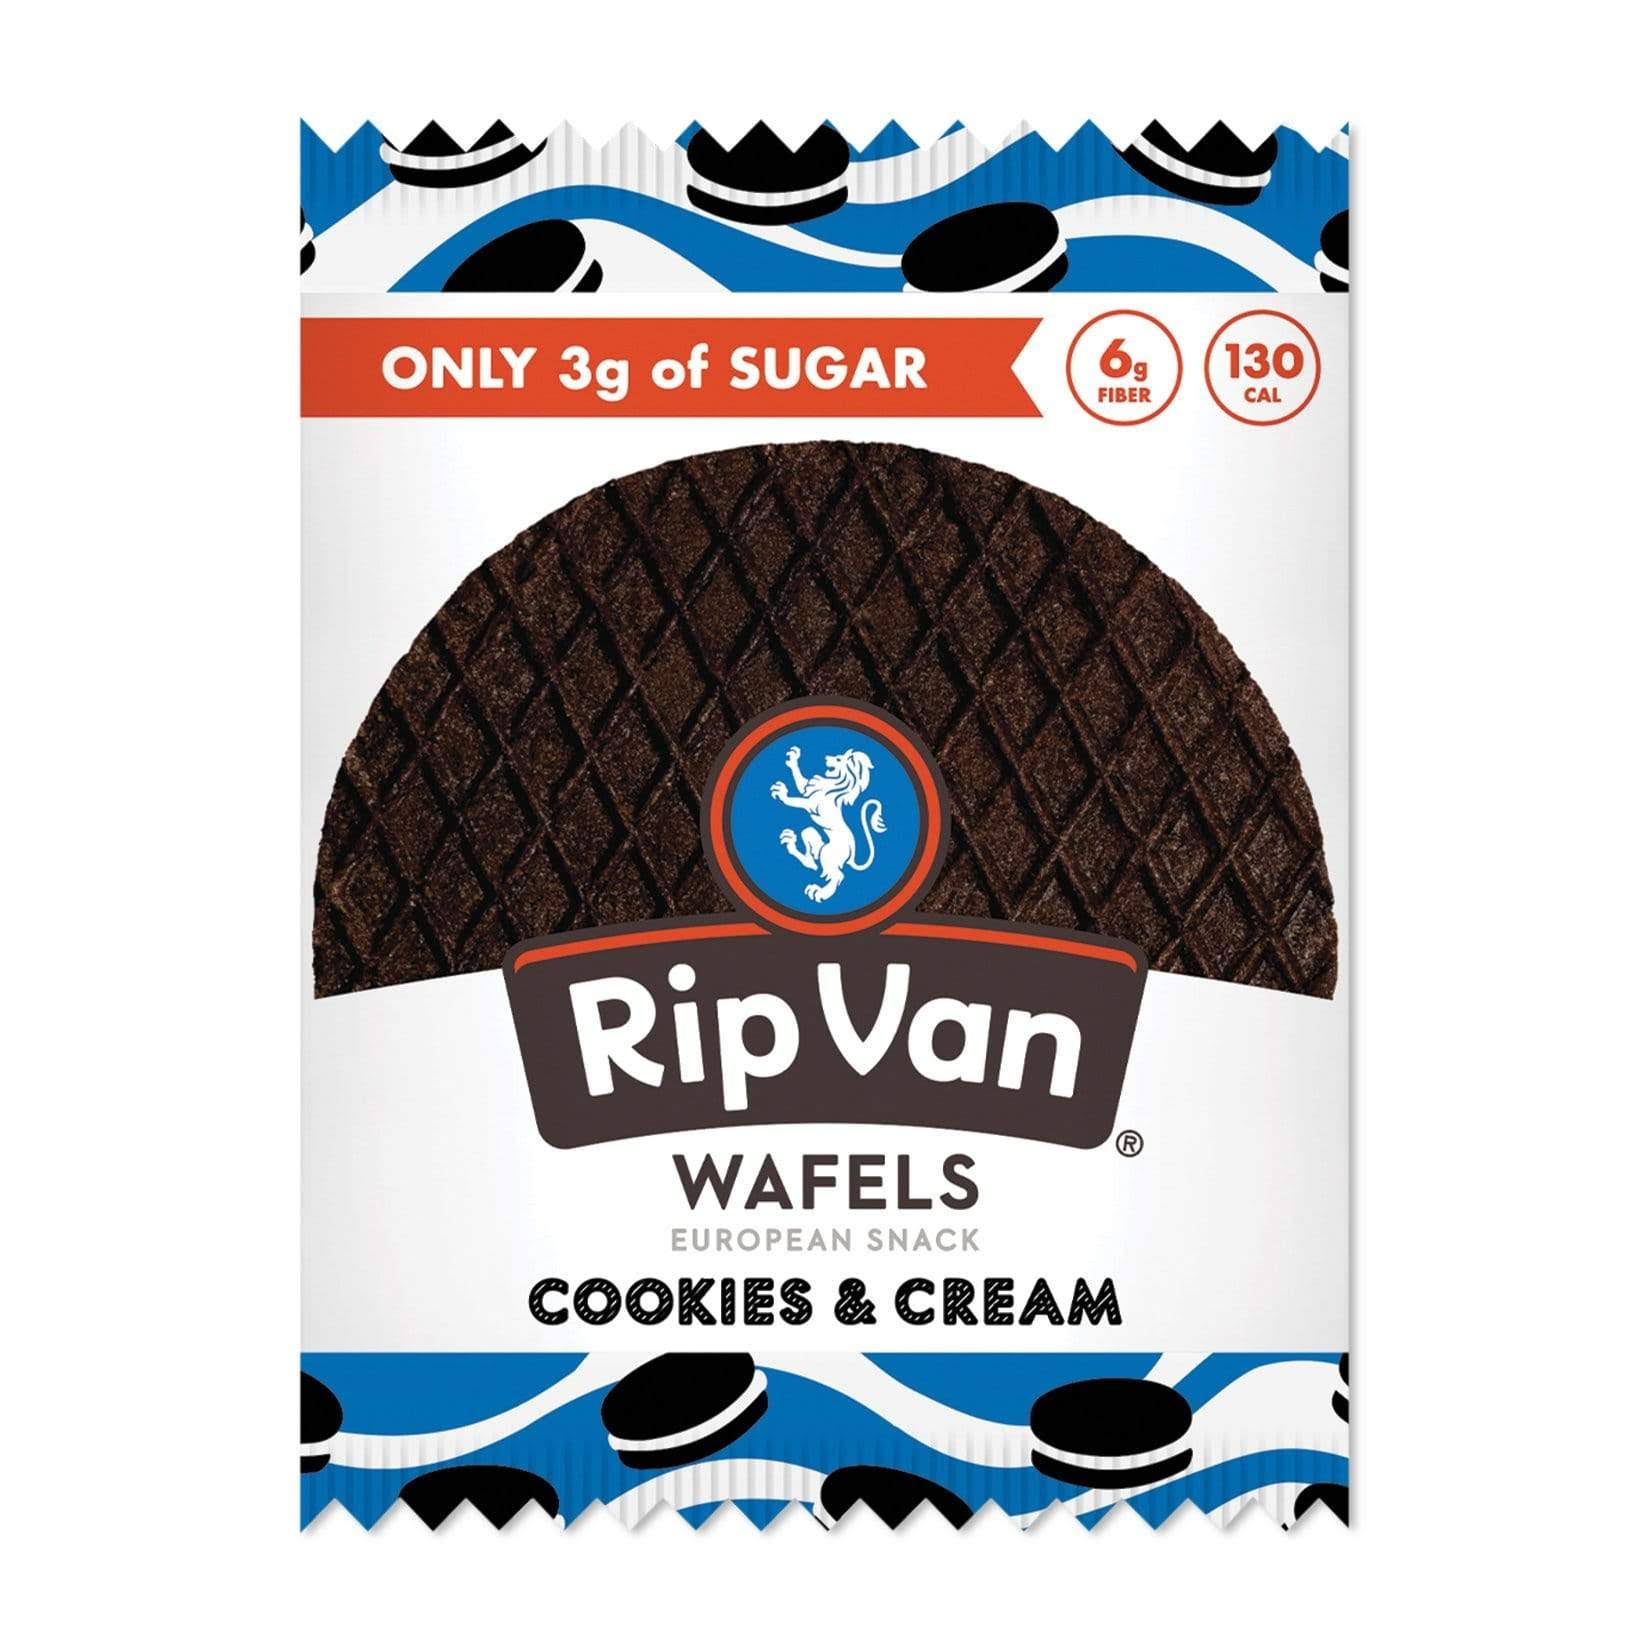 Rip Van Wafels, Wafels, Cookies & Cream, 1.16 oz (33 g)